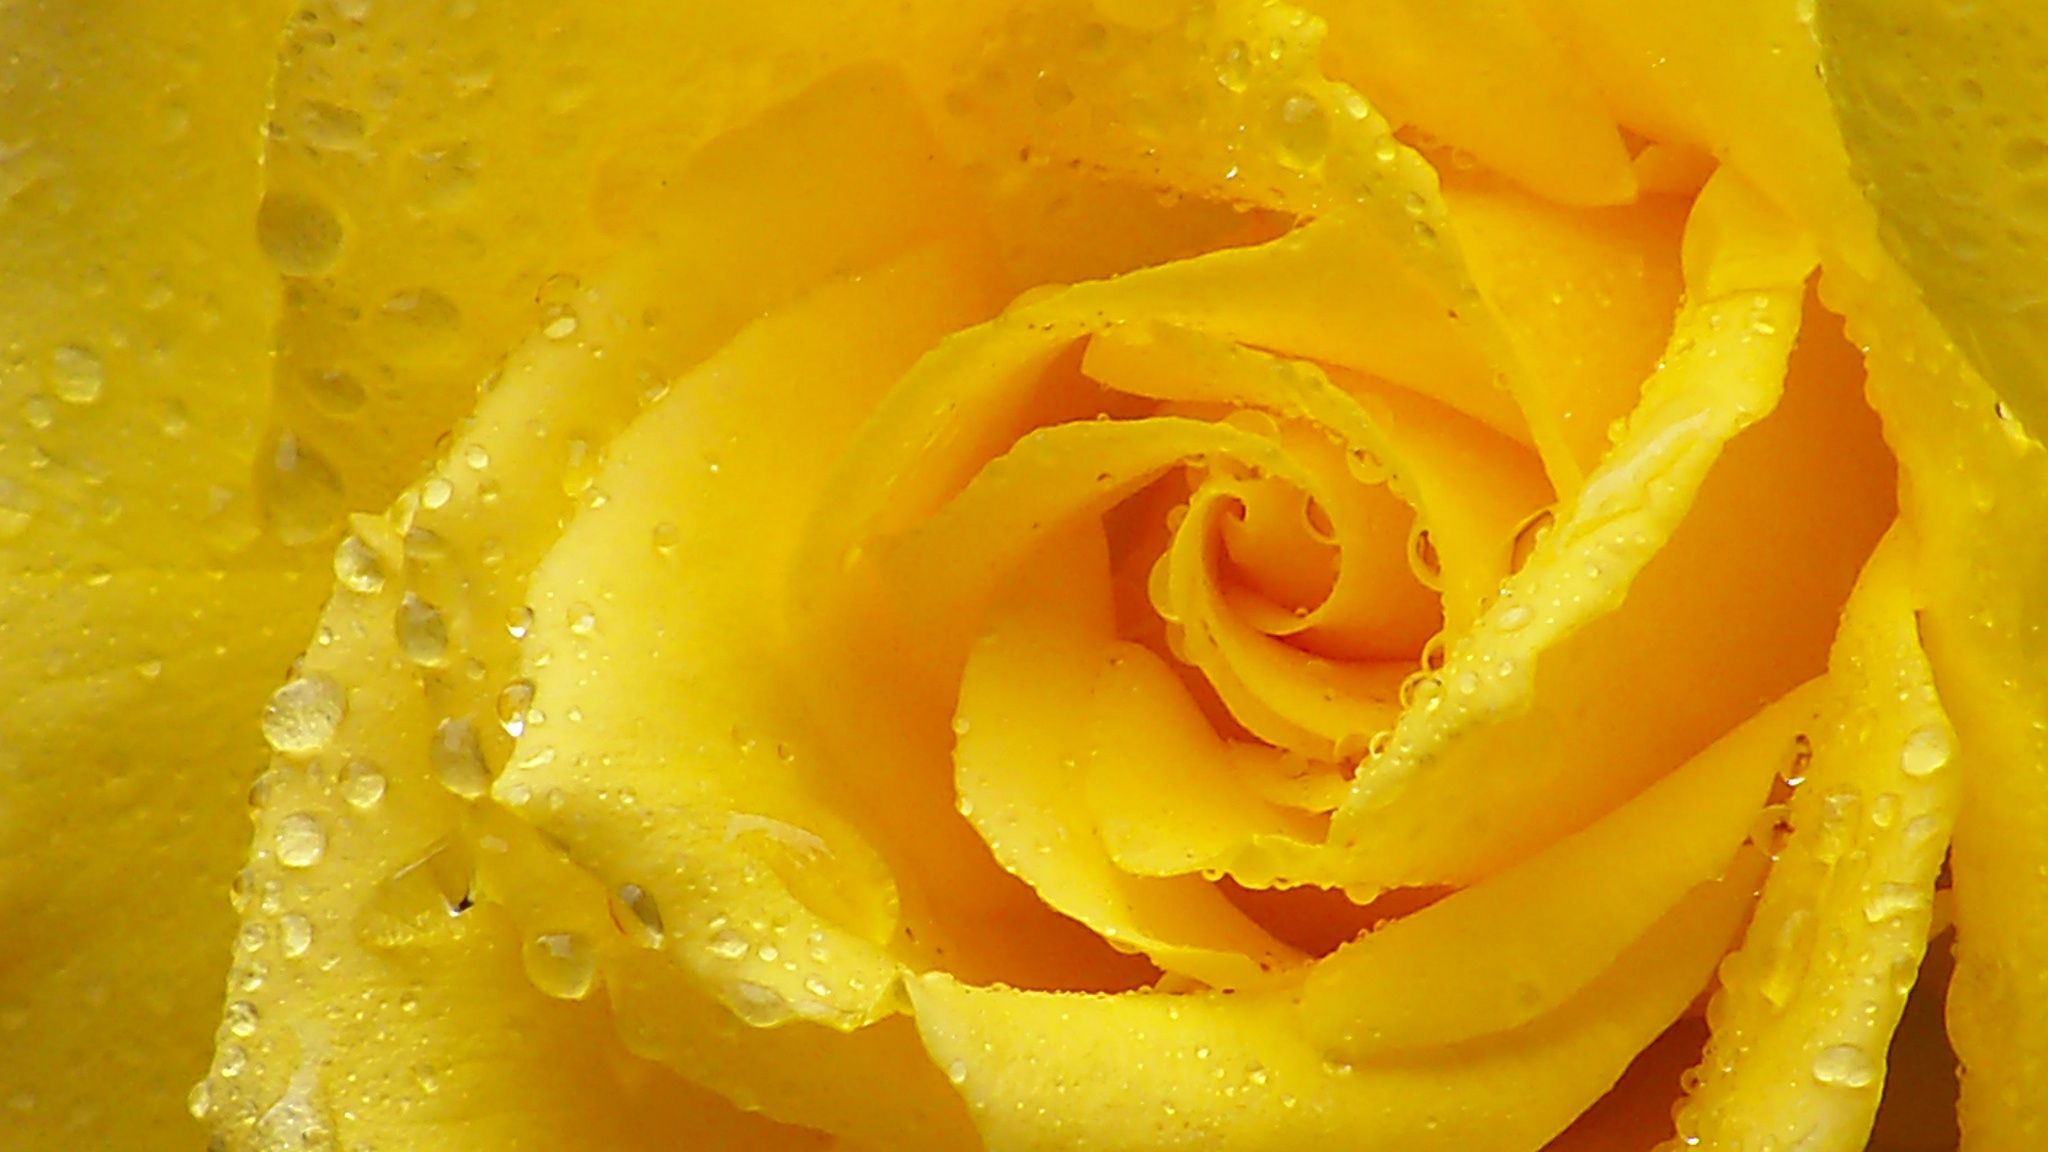 Download Wallpaper 2048x1152 Rose, Yellow rose, Petals, Drops ...